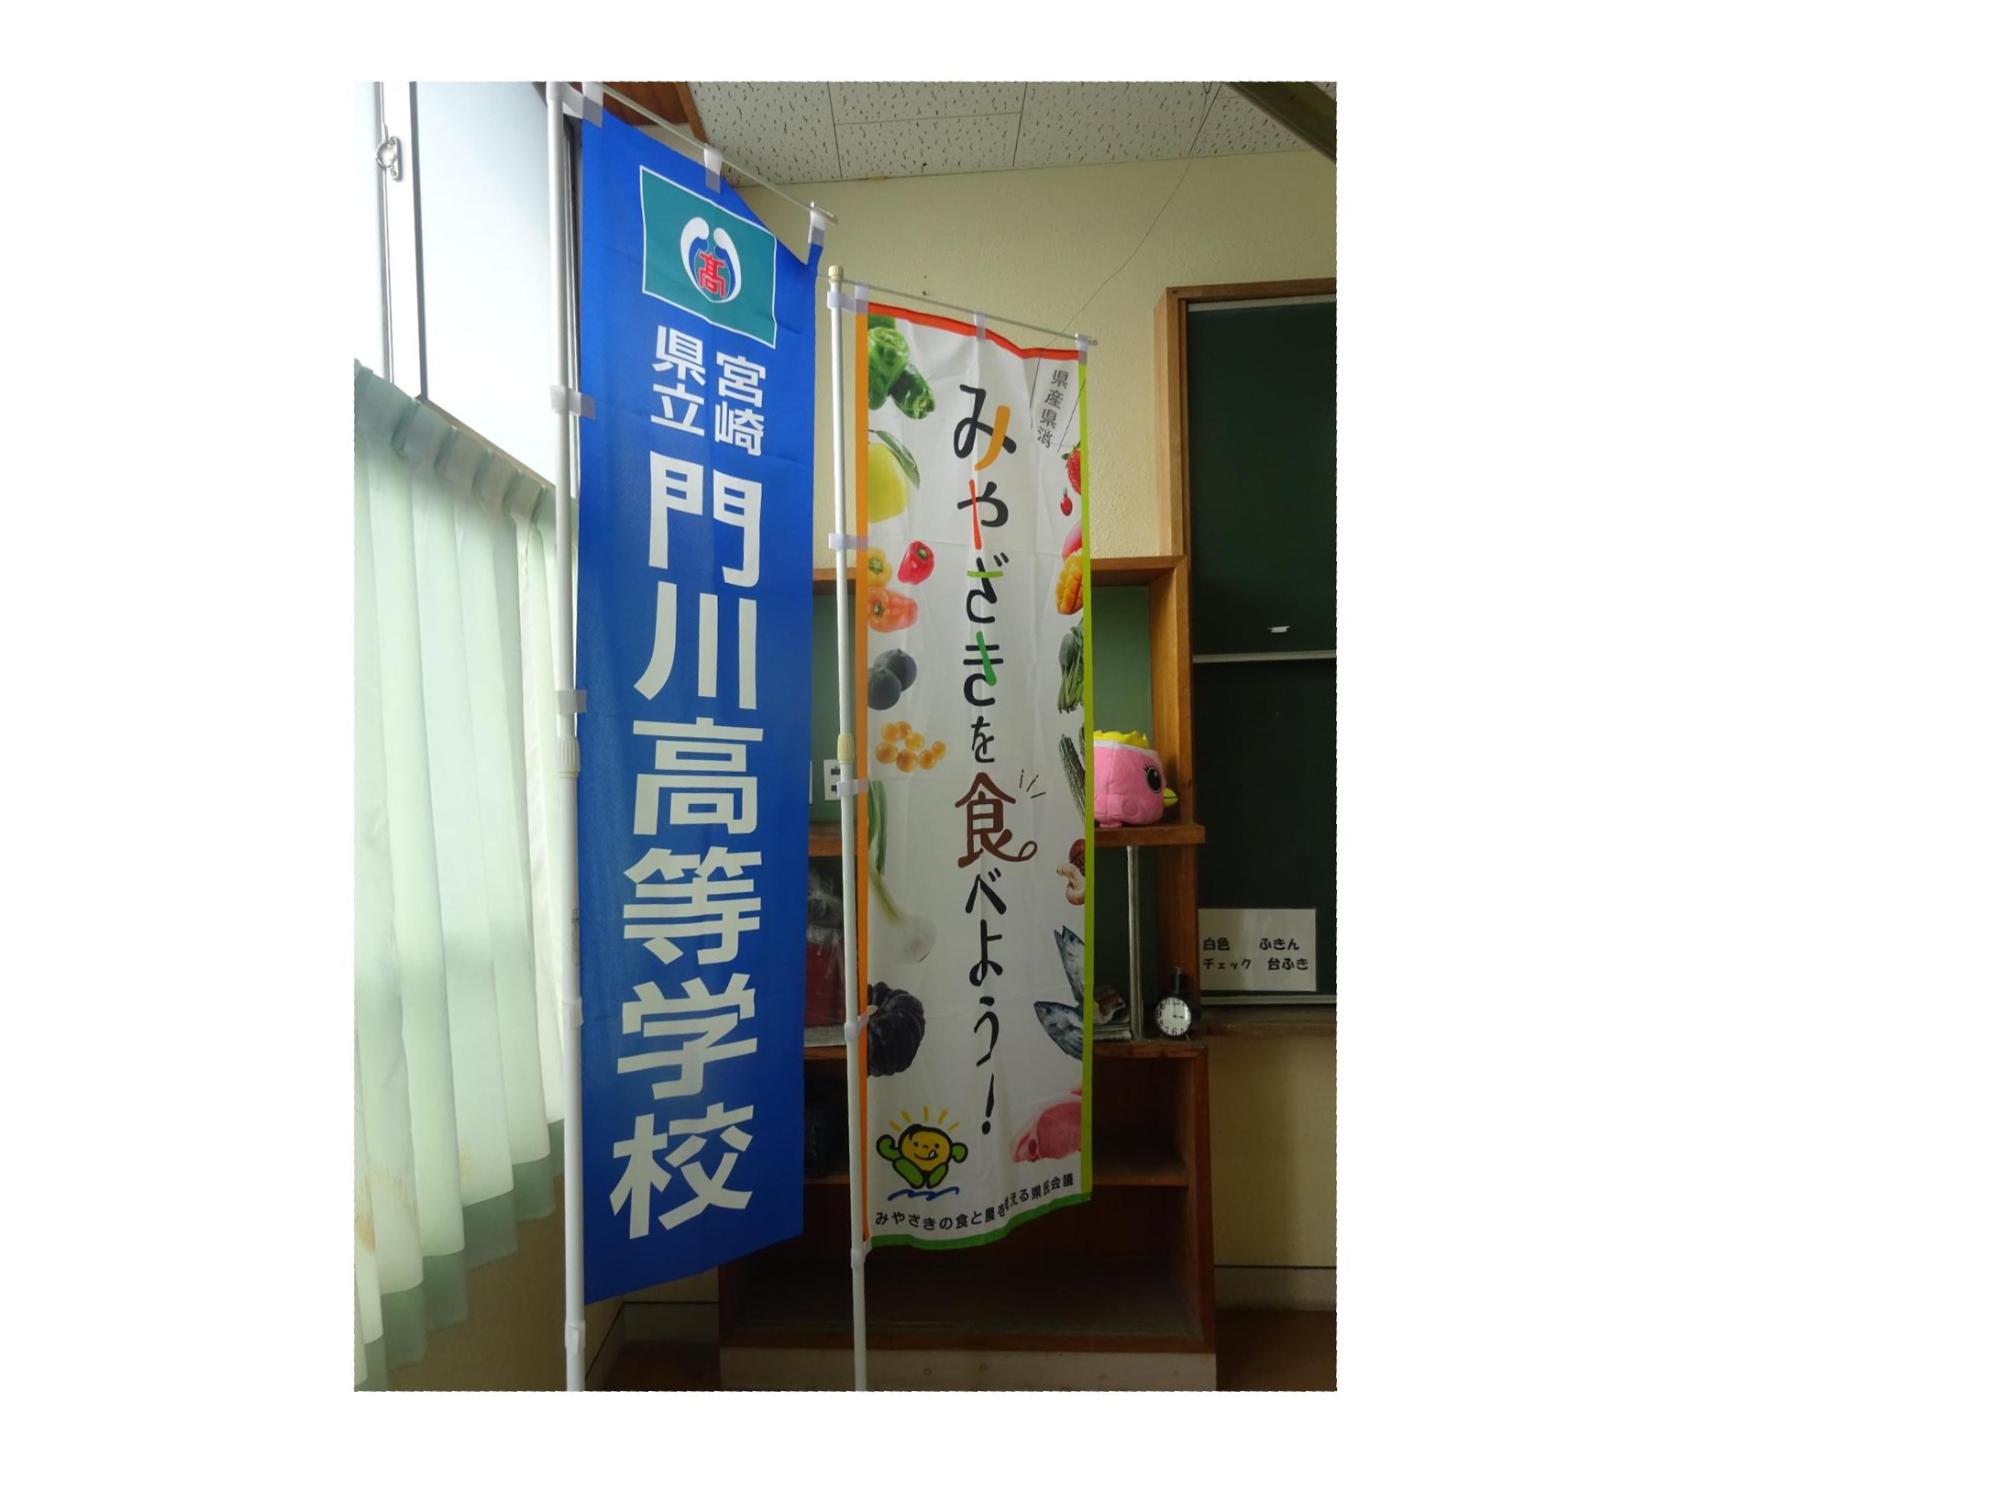 門川高校と食と農を考える県民会議ののぼり旗